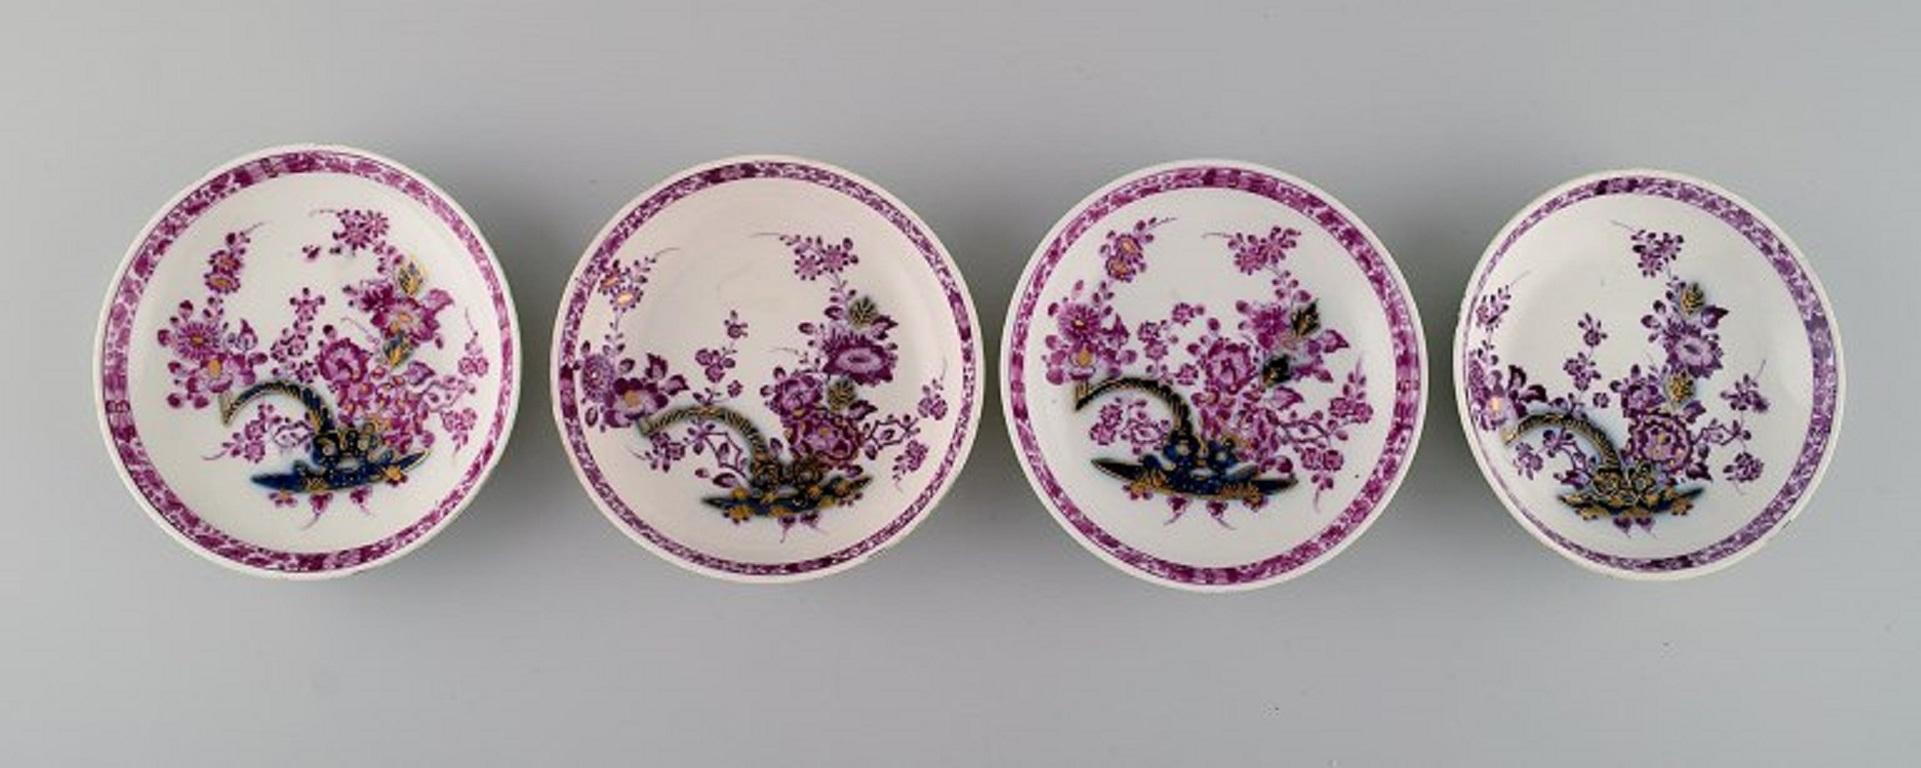 Quatre tasses à thé anciennes de Meissen avec soucoupes en porcelaine peinte à la main. 
Fleurs violettes et décoration dorée. 
Qualité musée, environ 1740.
La tasse mesure : 7.5 x 4,2 cm.
La soucoupe mesure : 12.2 x 2,5 cm.
En parfait